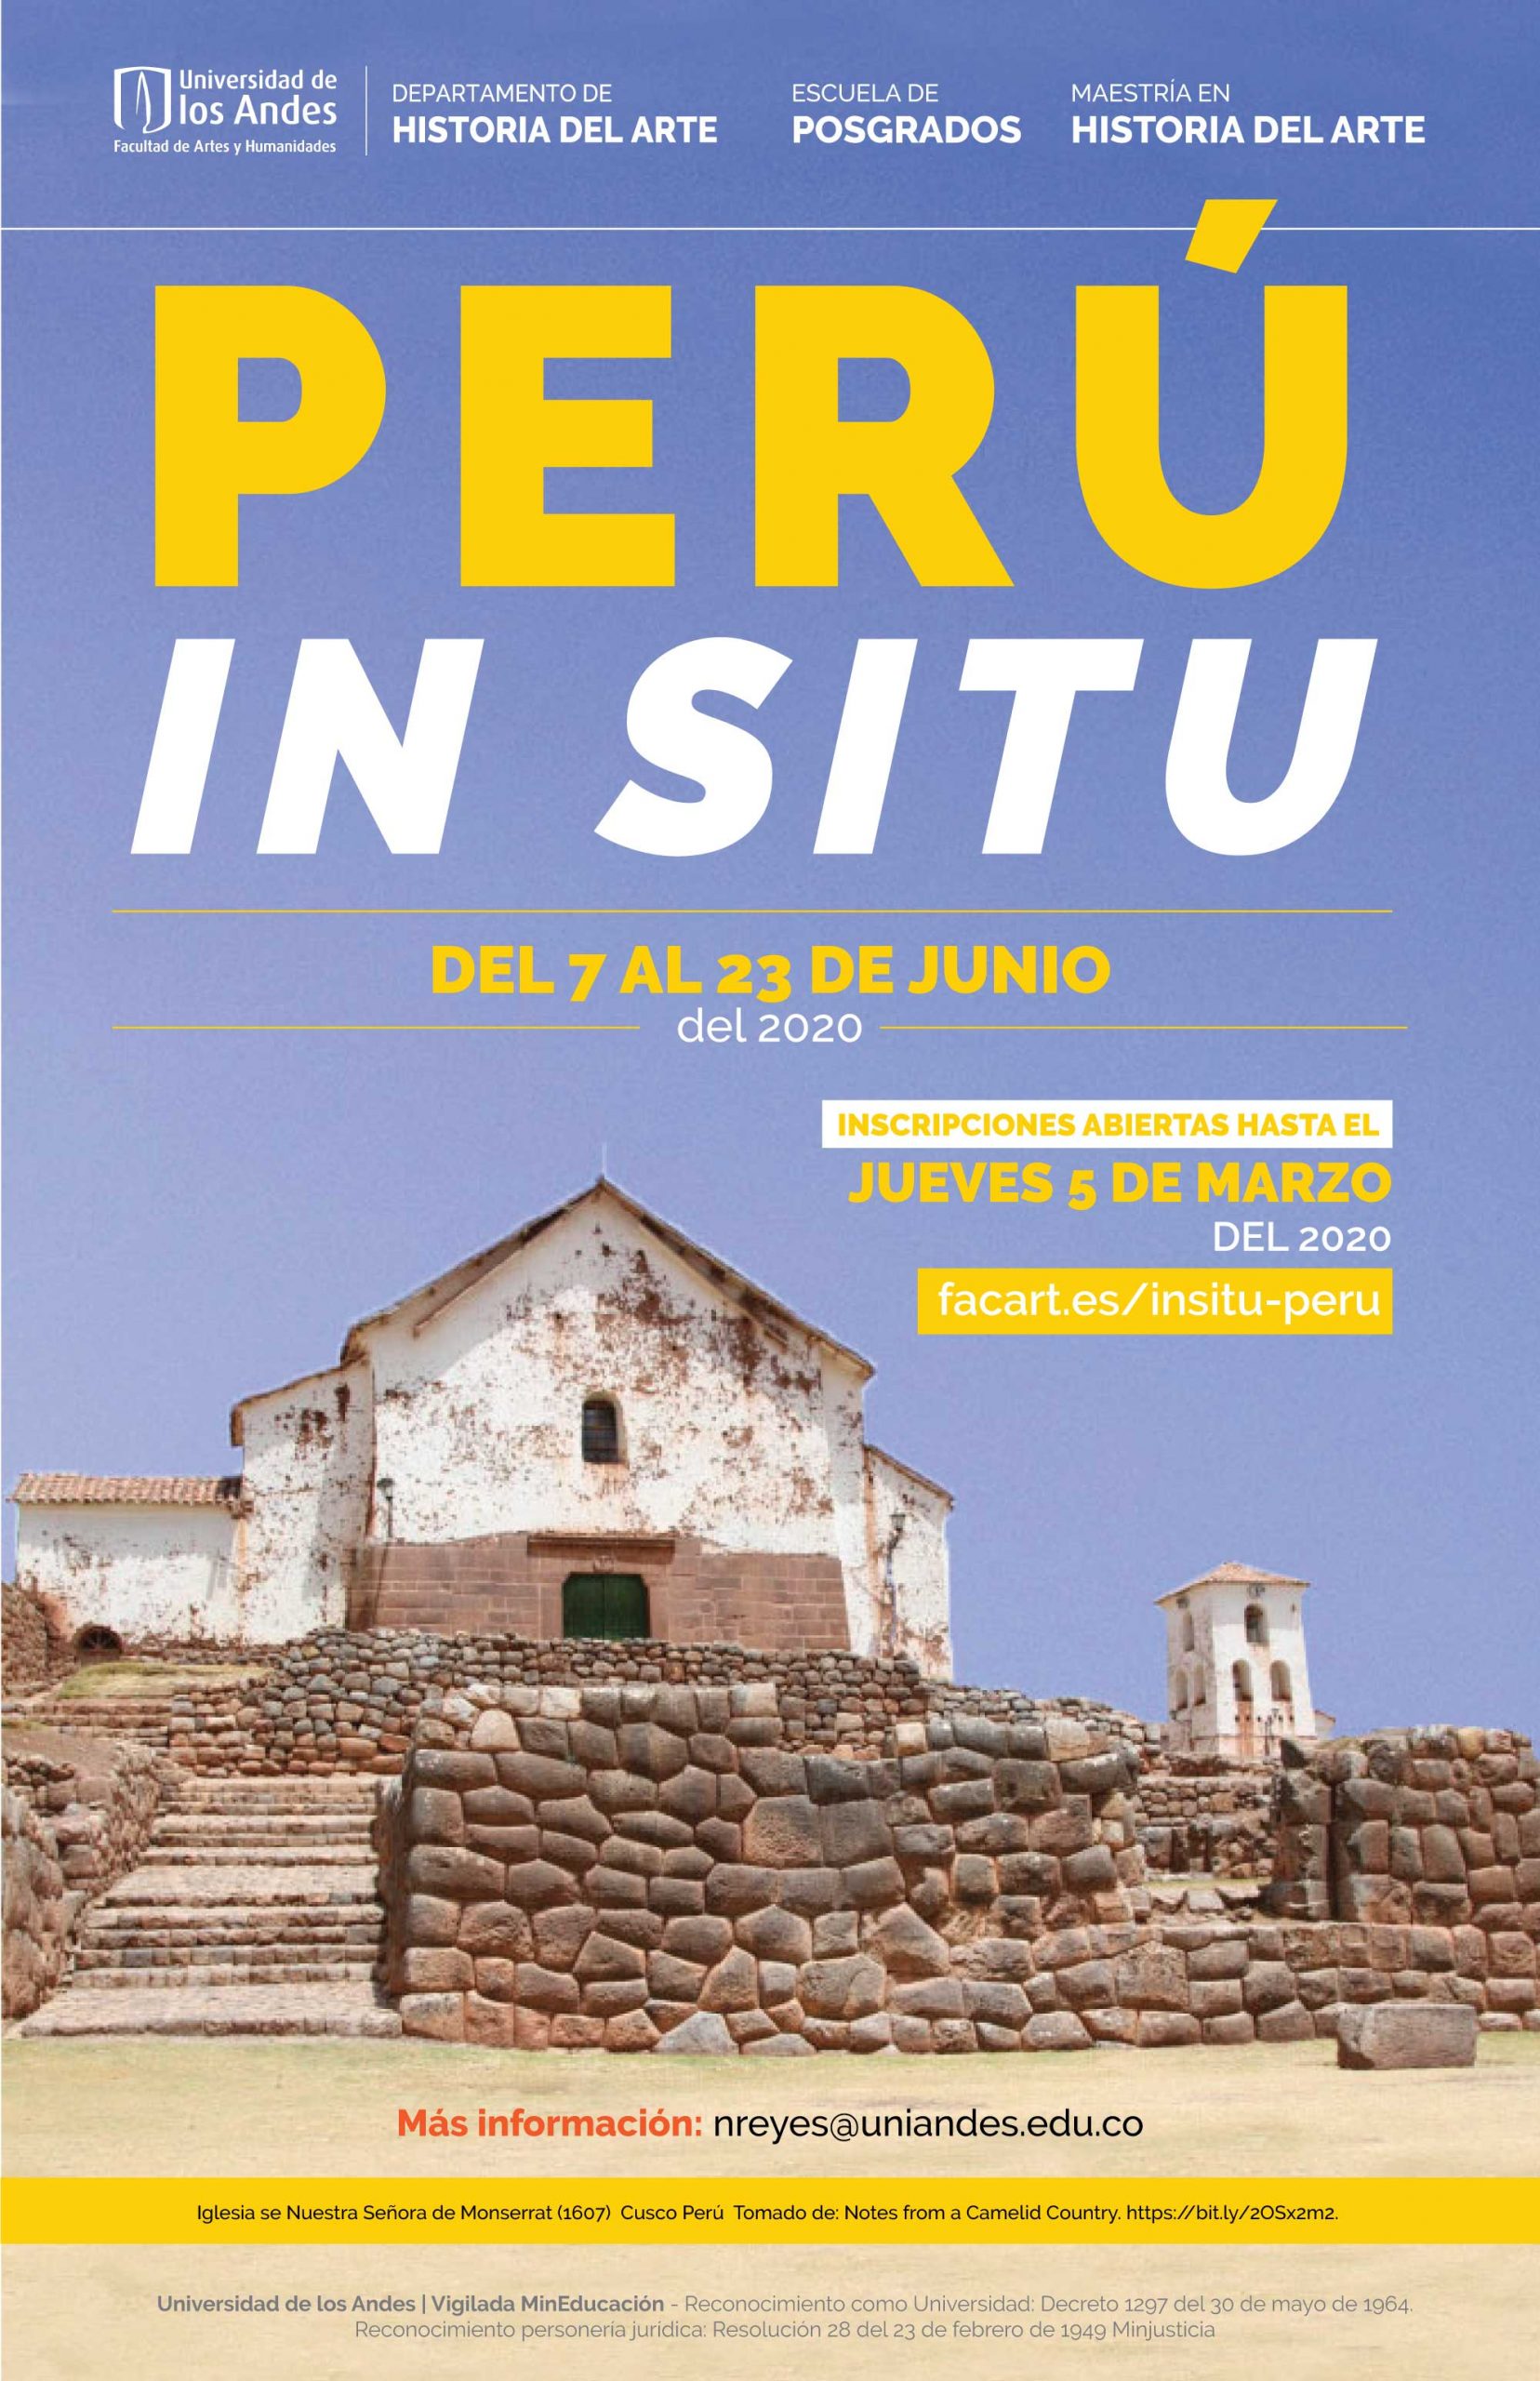 Inscripciones abiertas hasta el jueves 5 de marzo para Perú in situ que se llevará a cabo del 7 al 23 de junio